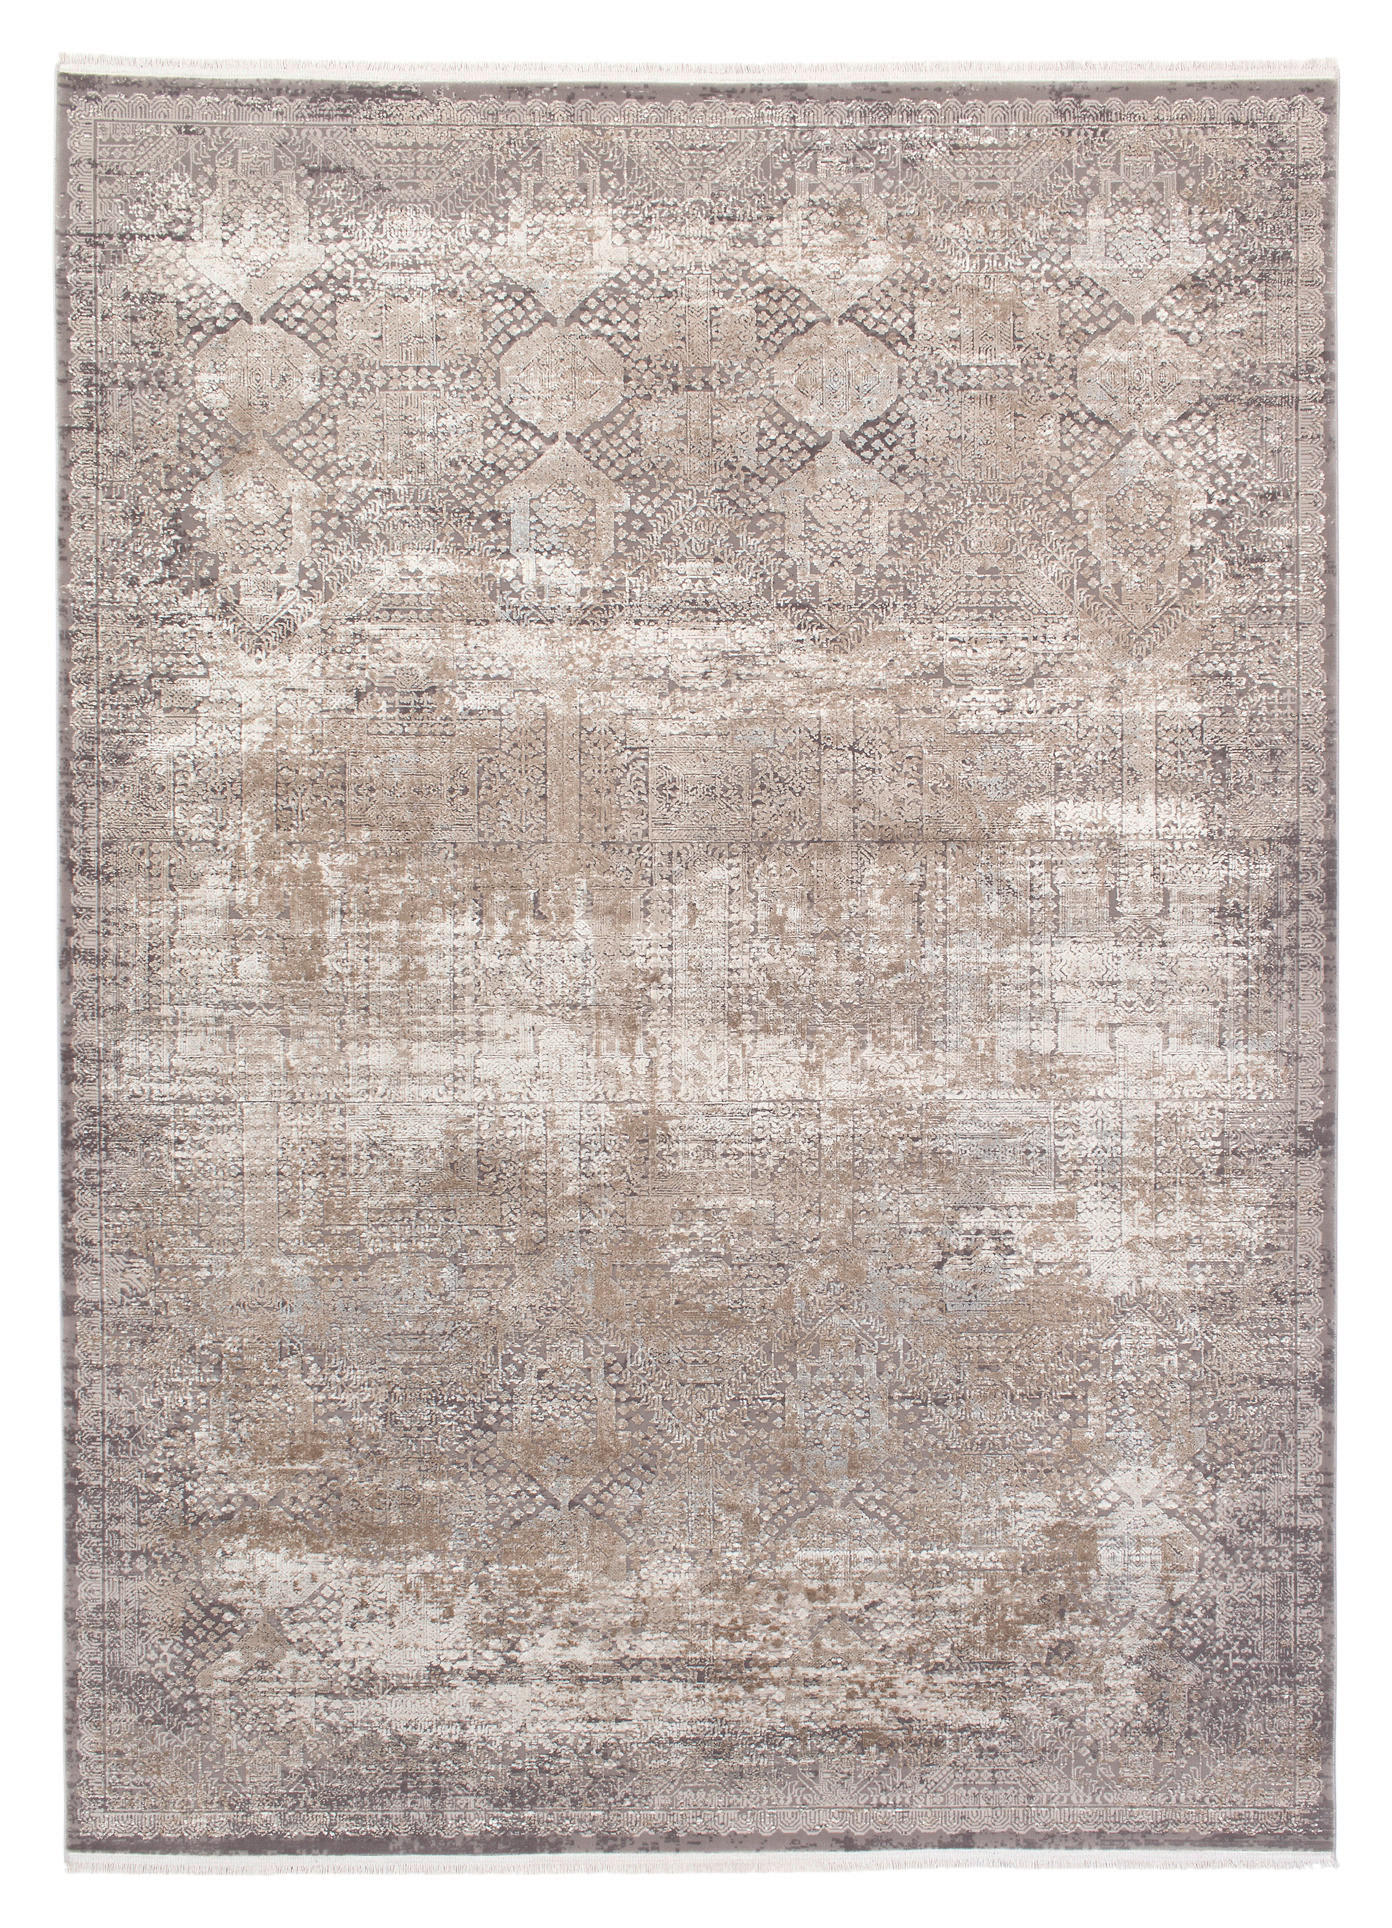 WEBTEPPICH 140/200 cm Apollo  - Beige/Braun, Design, Textil (140/200cm) - Musterring